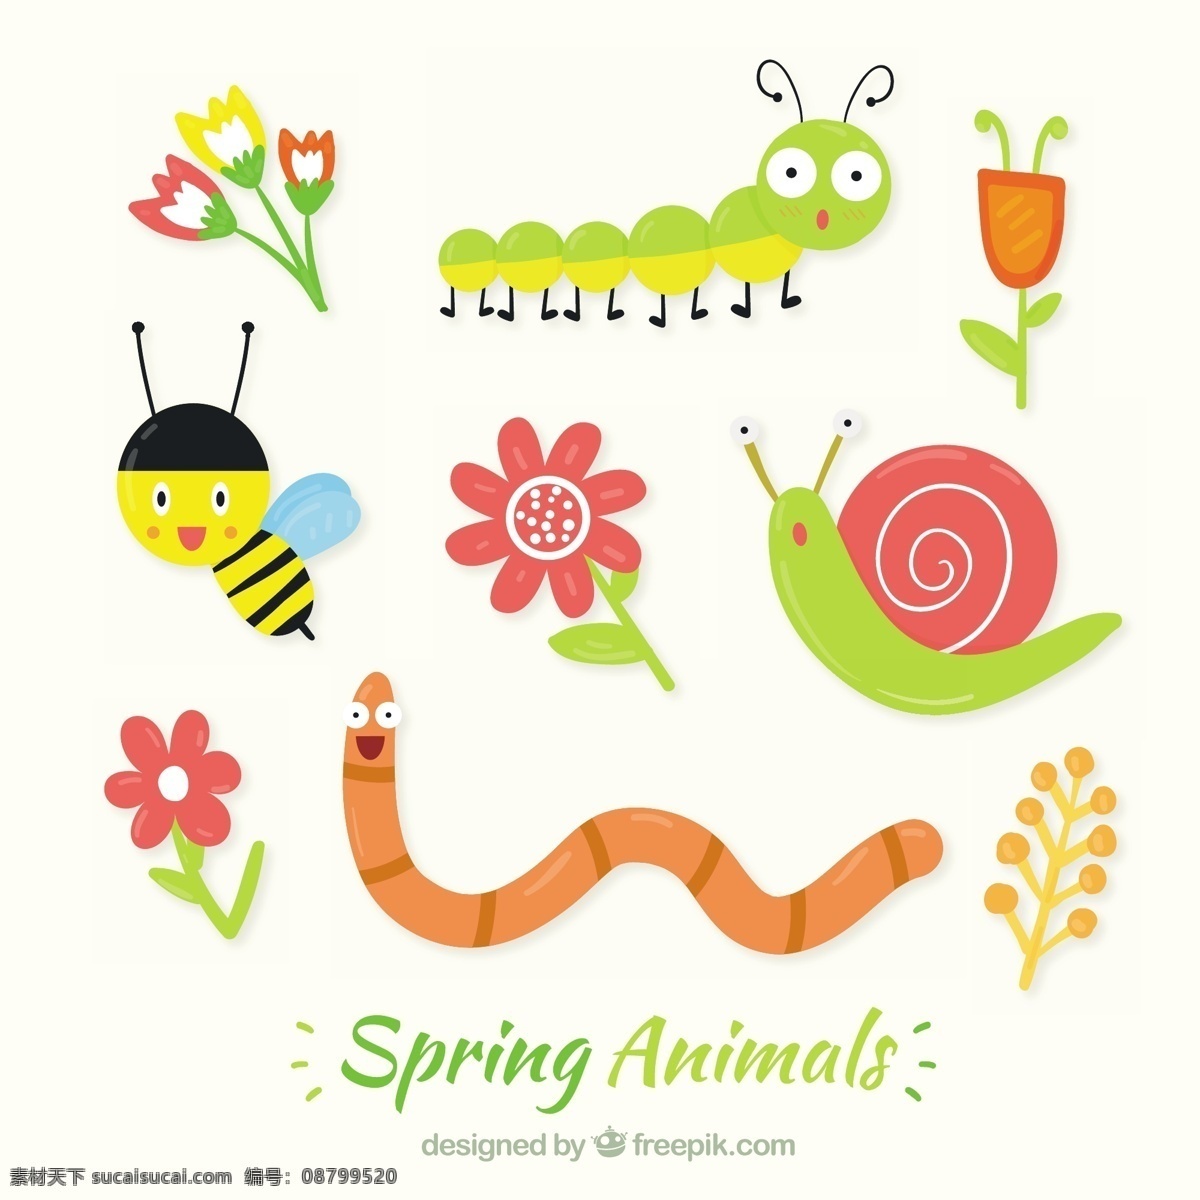 春天好的昆虫 花 手 自然 动物 春天 手画 可爱 蜜蜂 绘画 有趣 春天的花朵 蜗牛 可爱的动物 画 季节 蠕虫 昆虫 白色